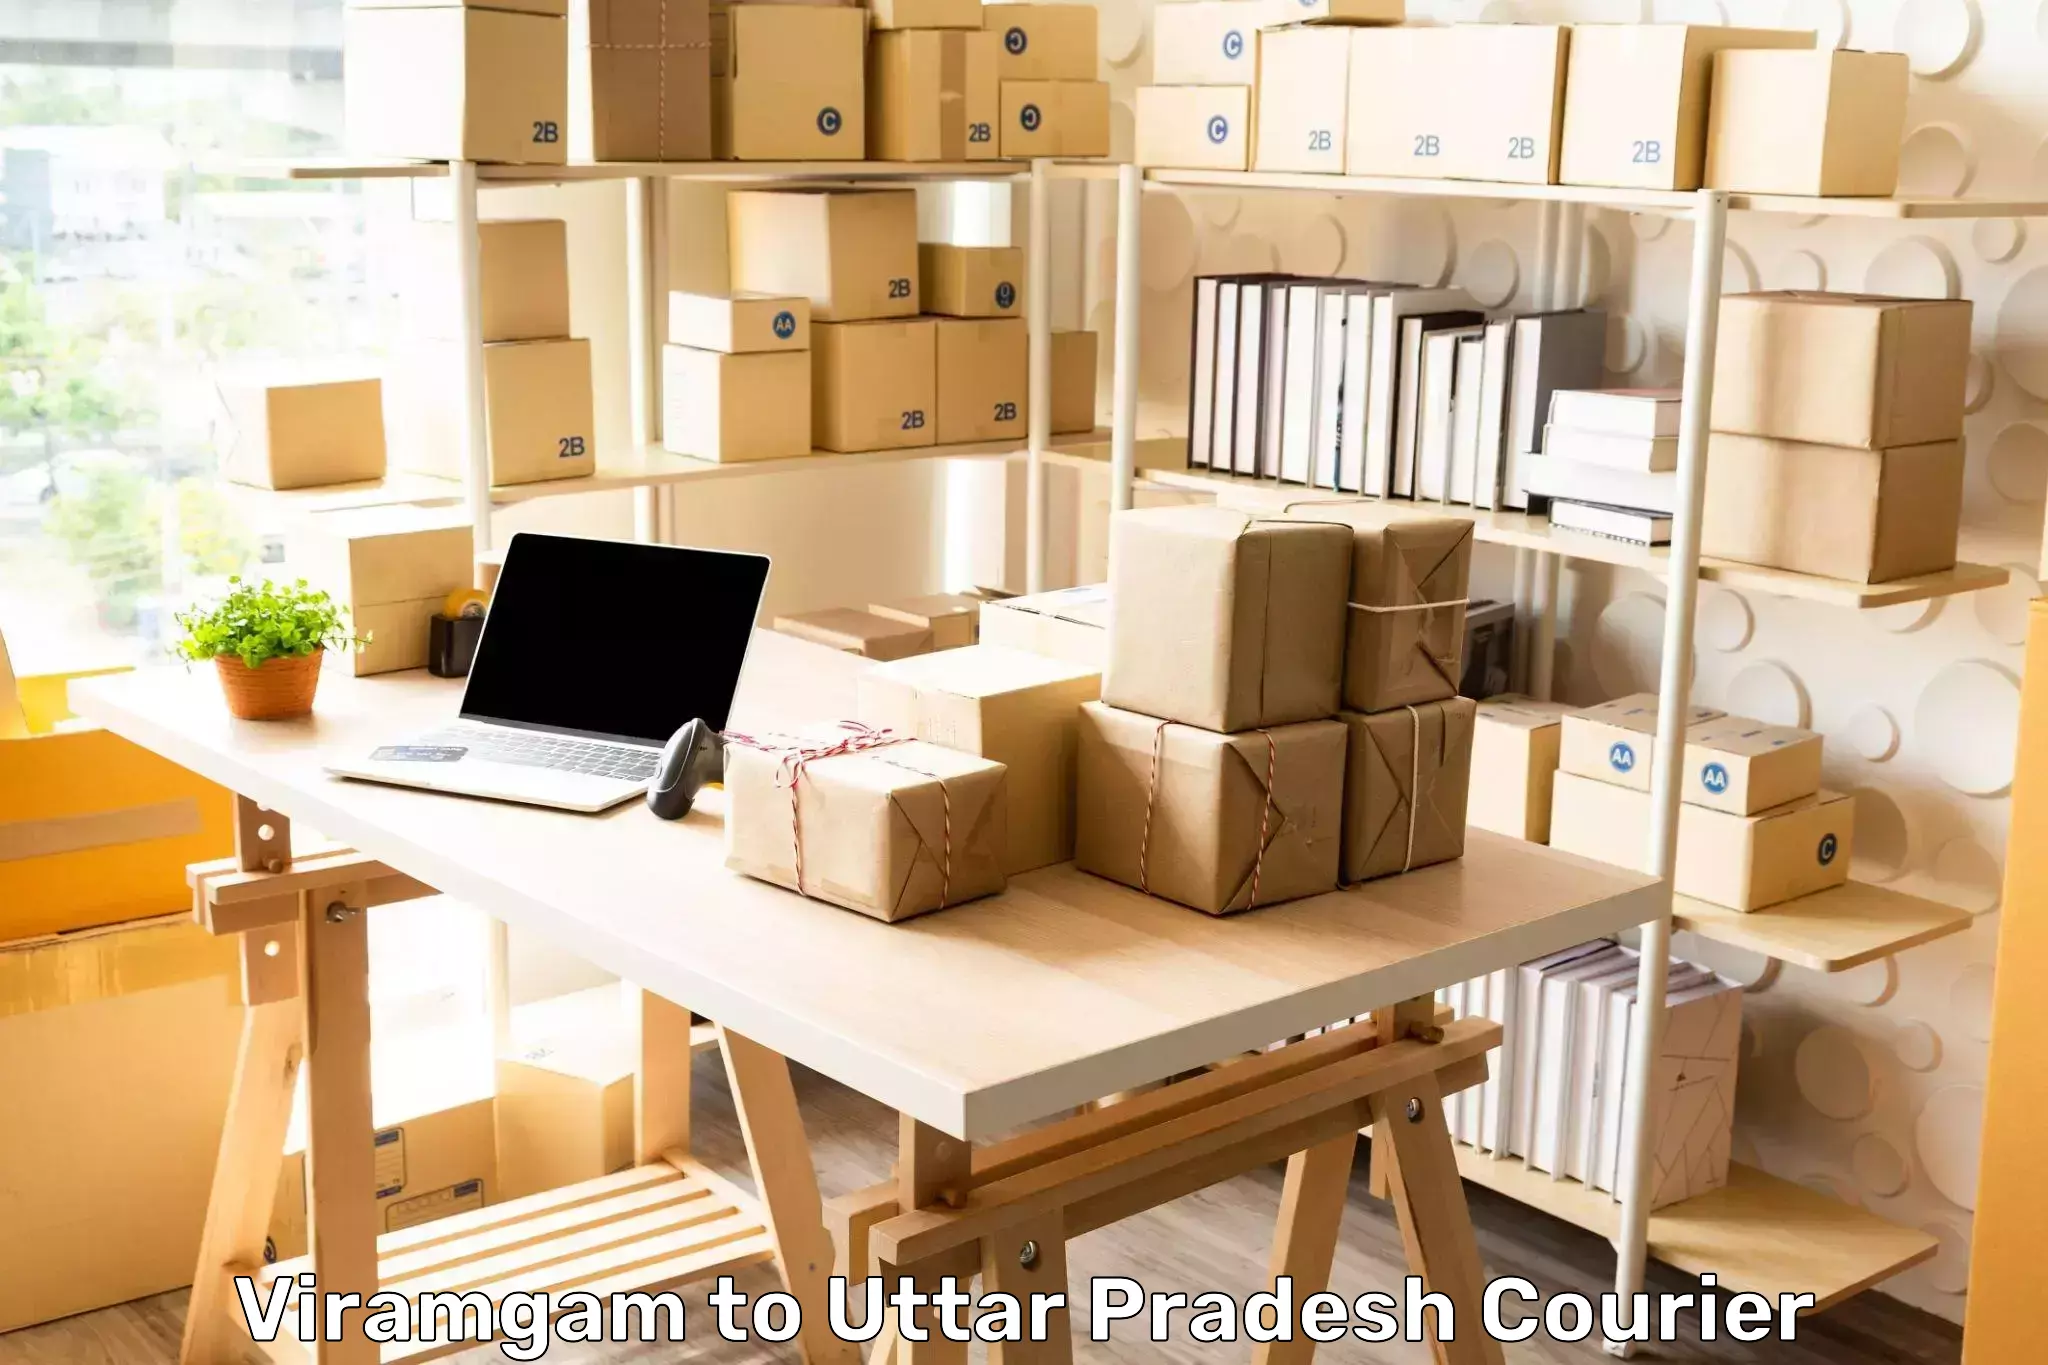 Secure package delivery Viramgam to Ambedkar Nagar